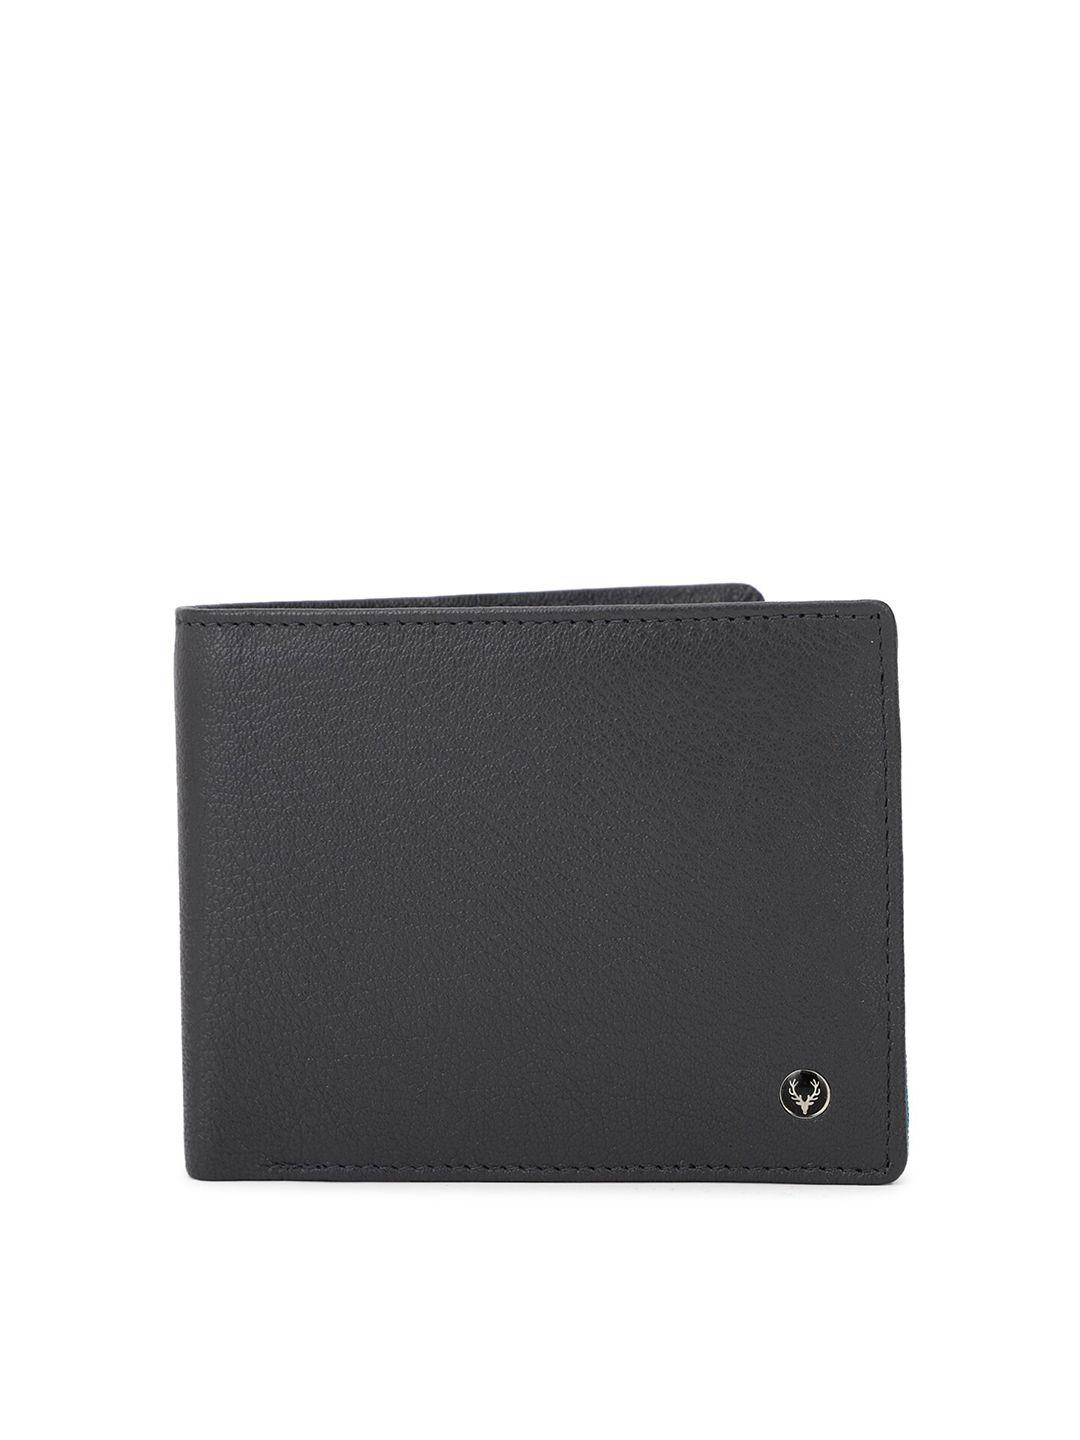 allen solly men black leather two fold wallet